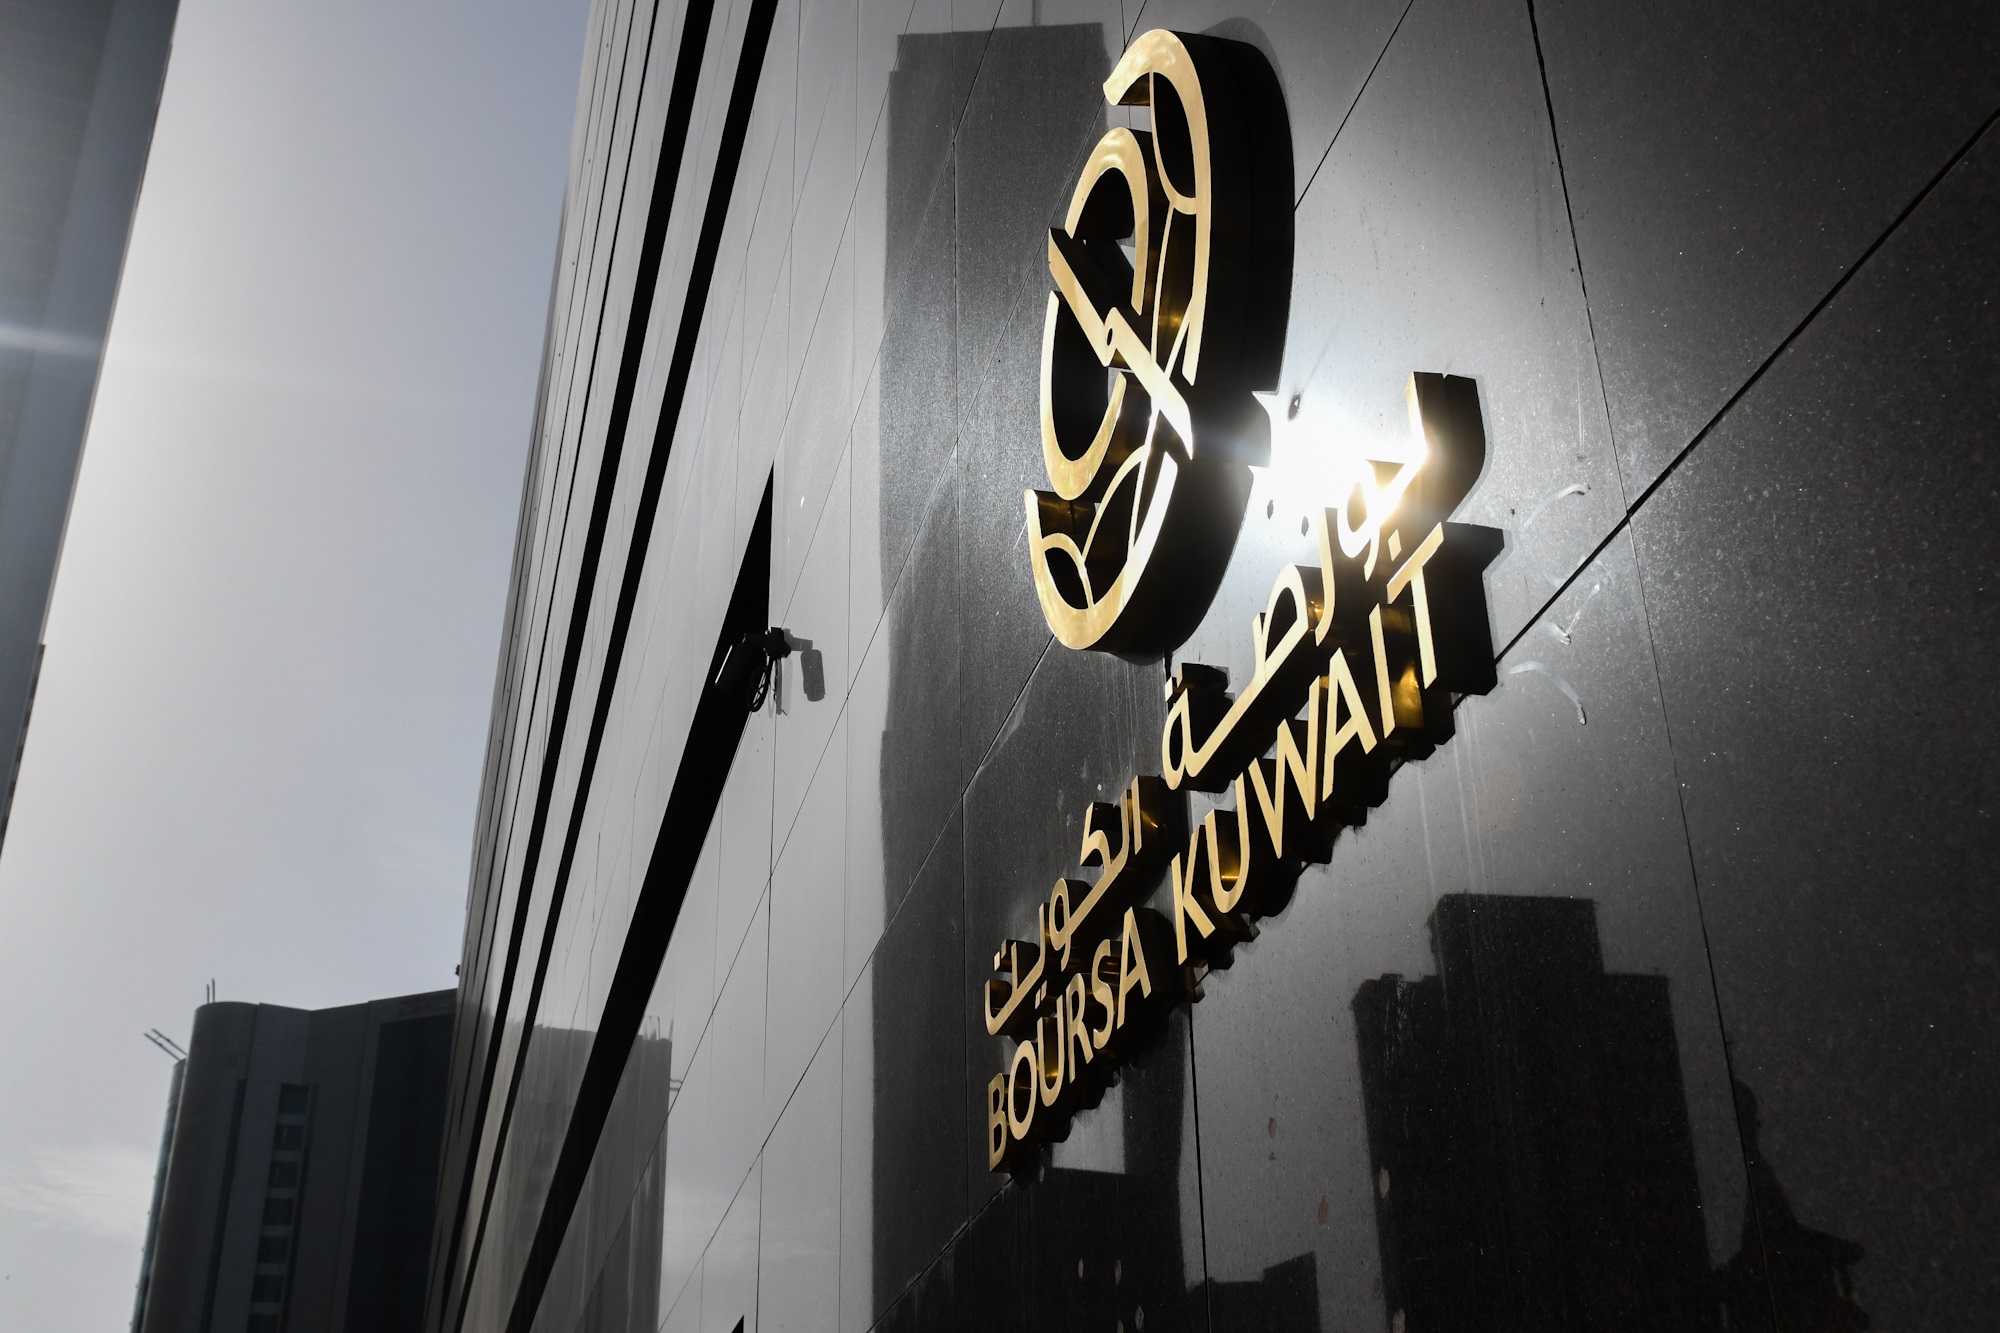 بورصة الكويت تغلق تعاملاتها على ارتفاع مؤشرها العام 2ر75 نقطة ليبلغ 60ر7571 بنسبة 1 في المئة                                                                                                                                                              